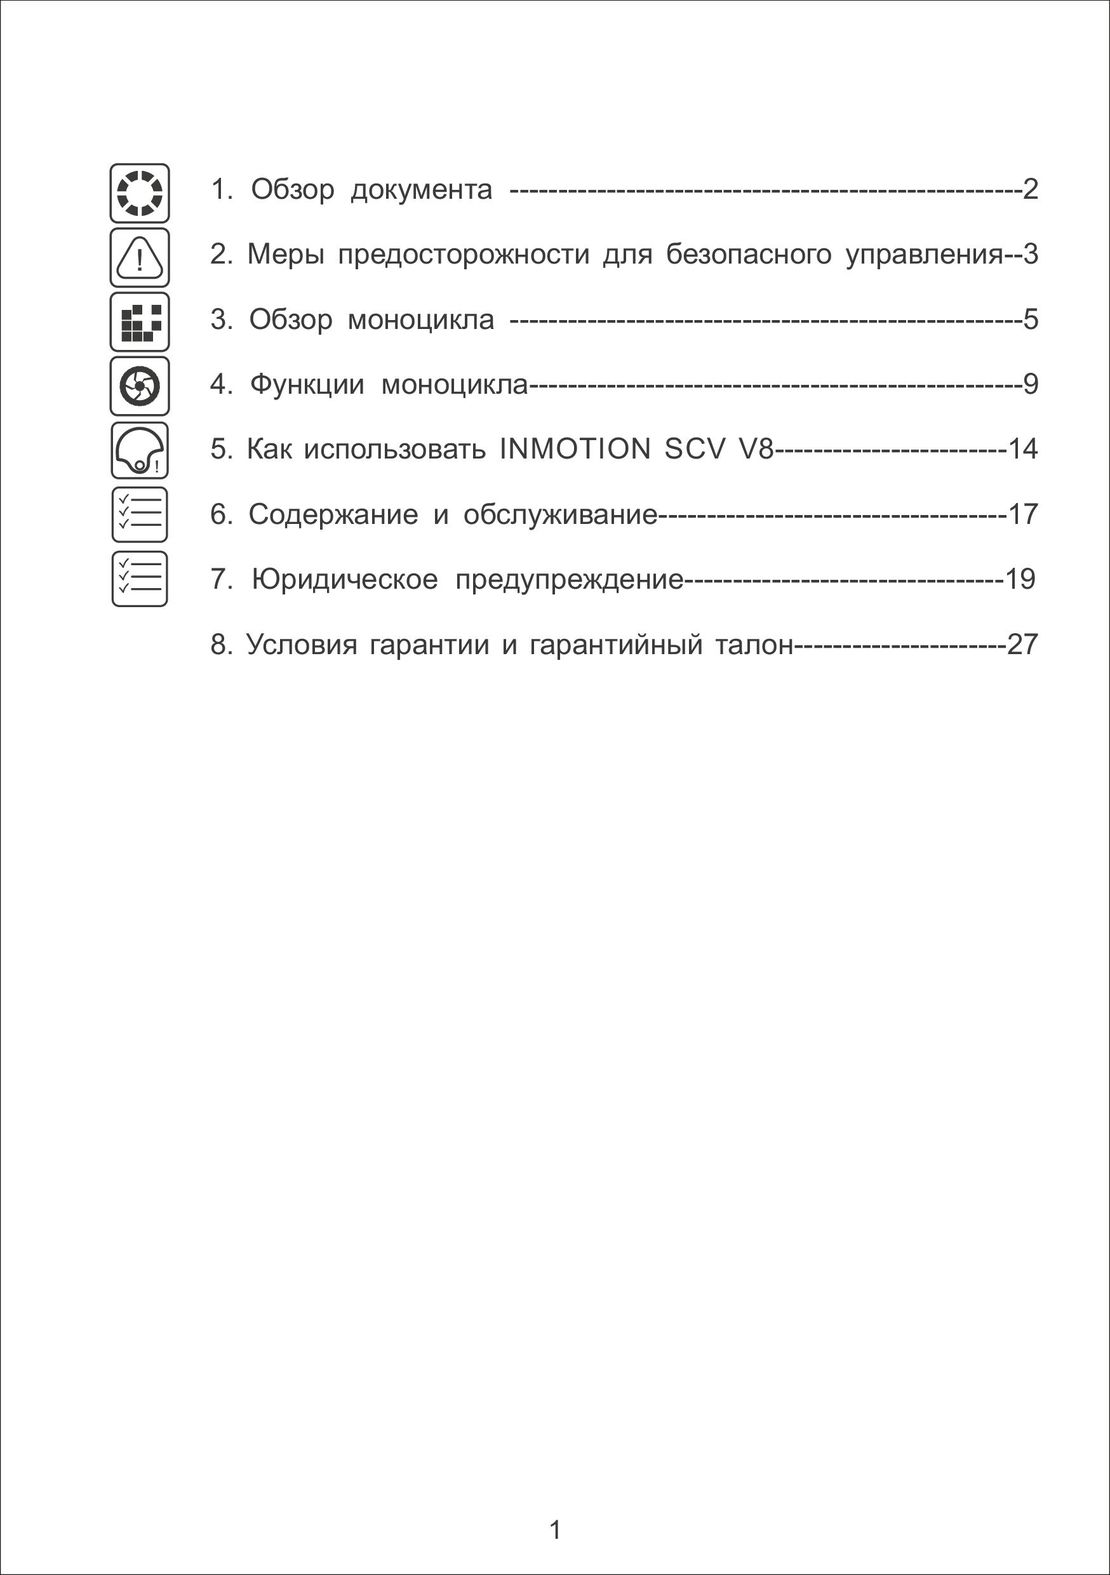 INMOTION SCV инструкция на русском